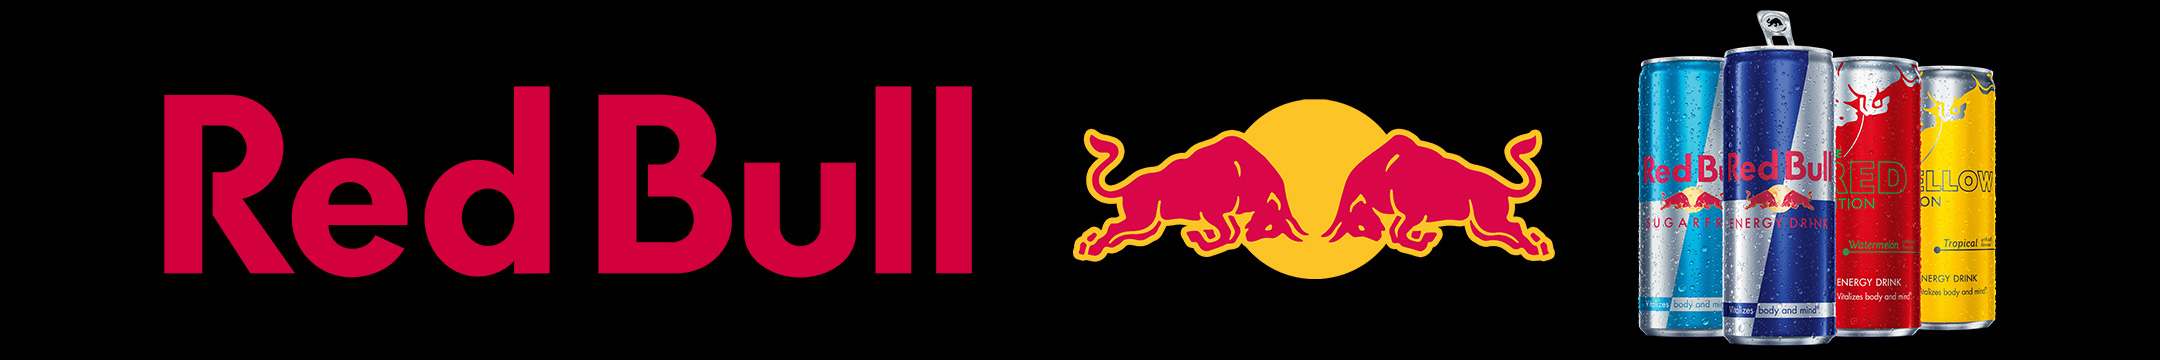 Red Bull Sponsor